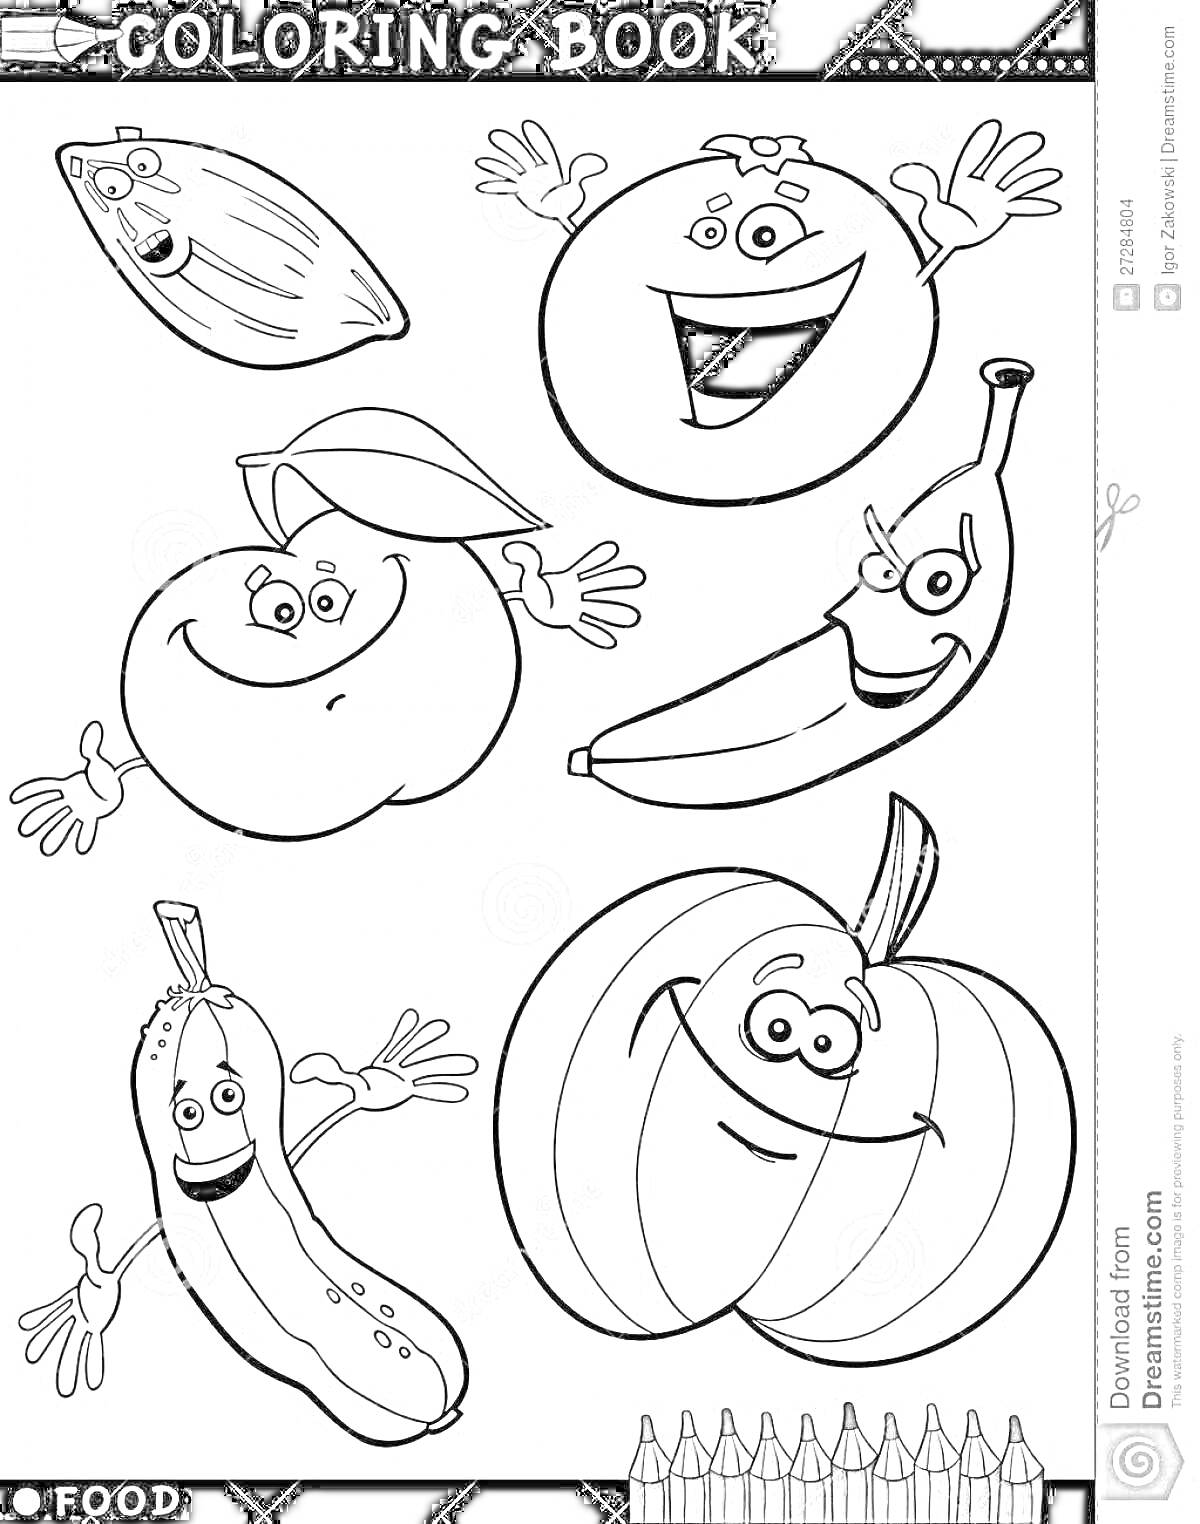 Раскраска Раскраска с миндалем, апельсином, персиком, бананом, огурцом и тыквой